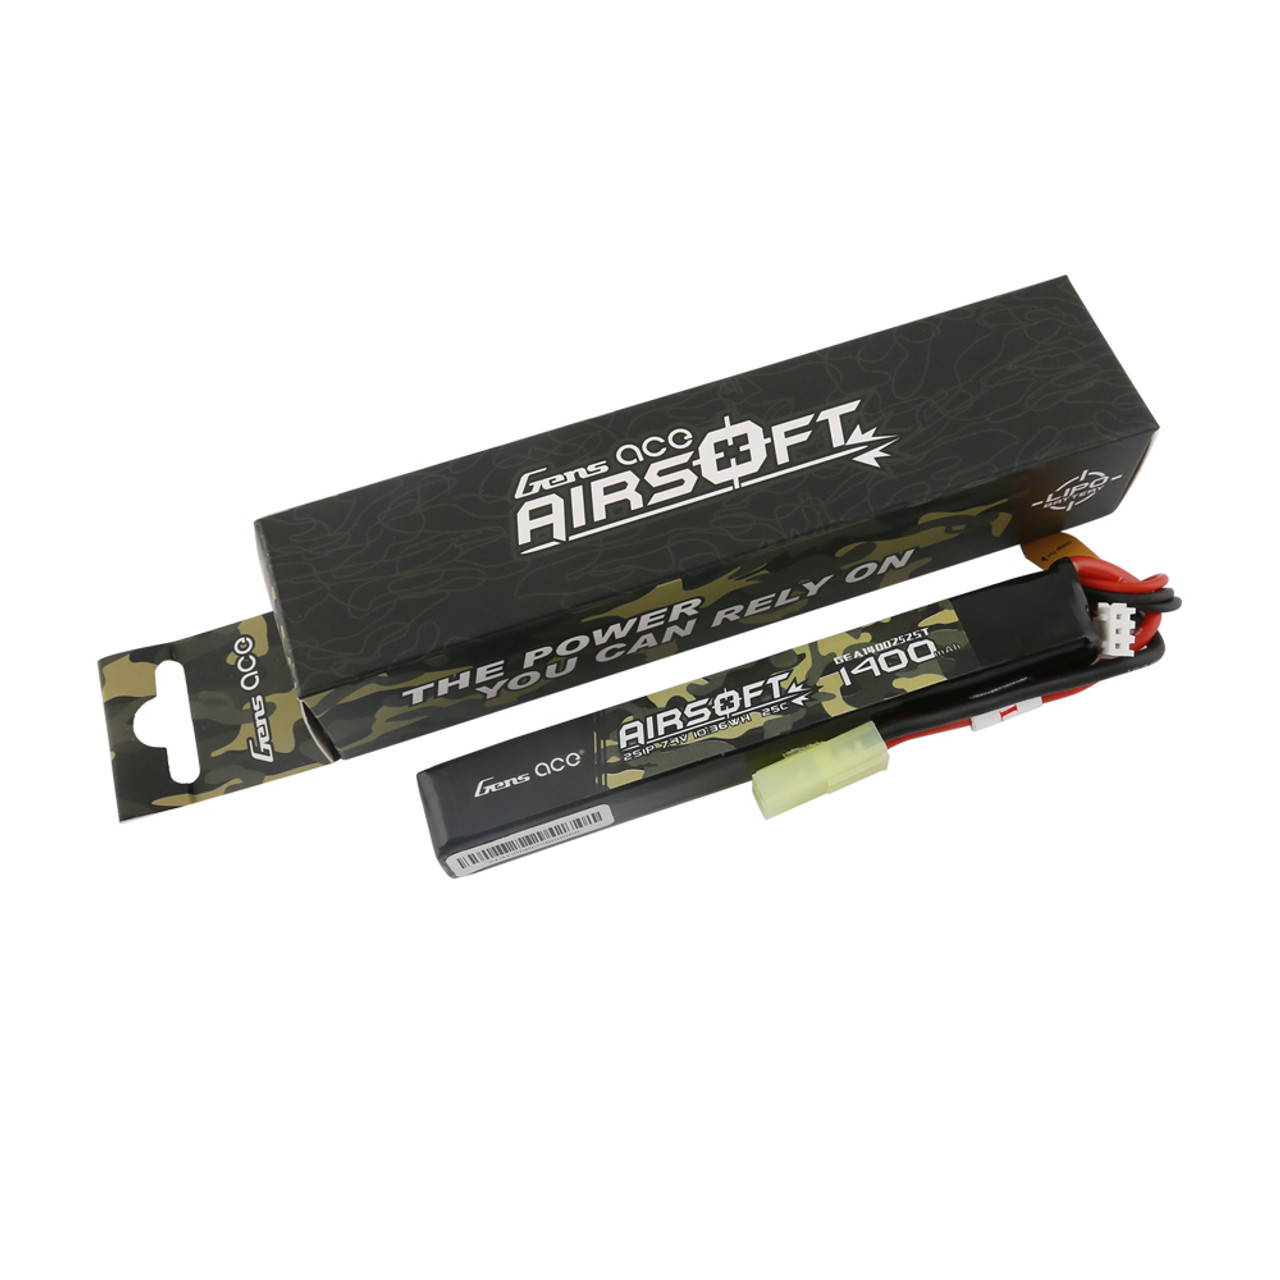 2x Airsoft LiPo Battery 7.4V 1200mAh w/ Mini Tamiya Connector for Airsoft  Rifle